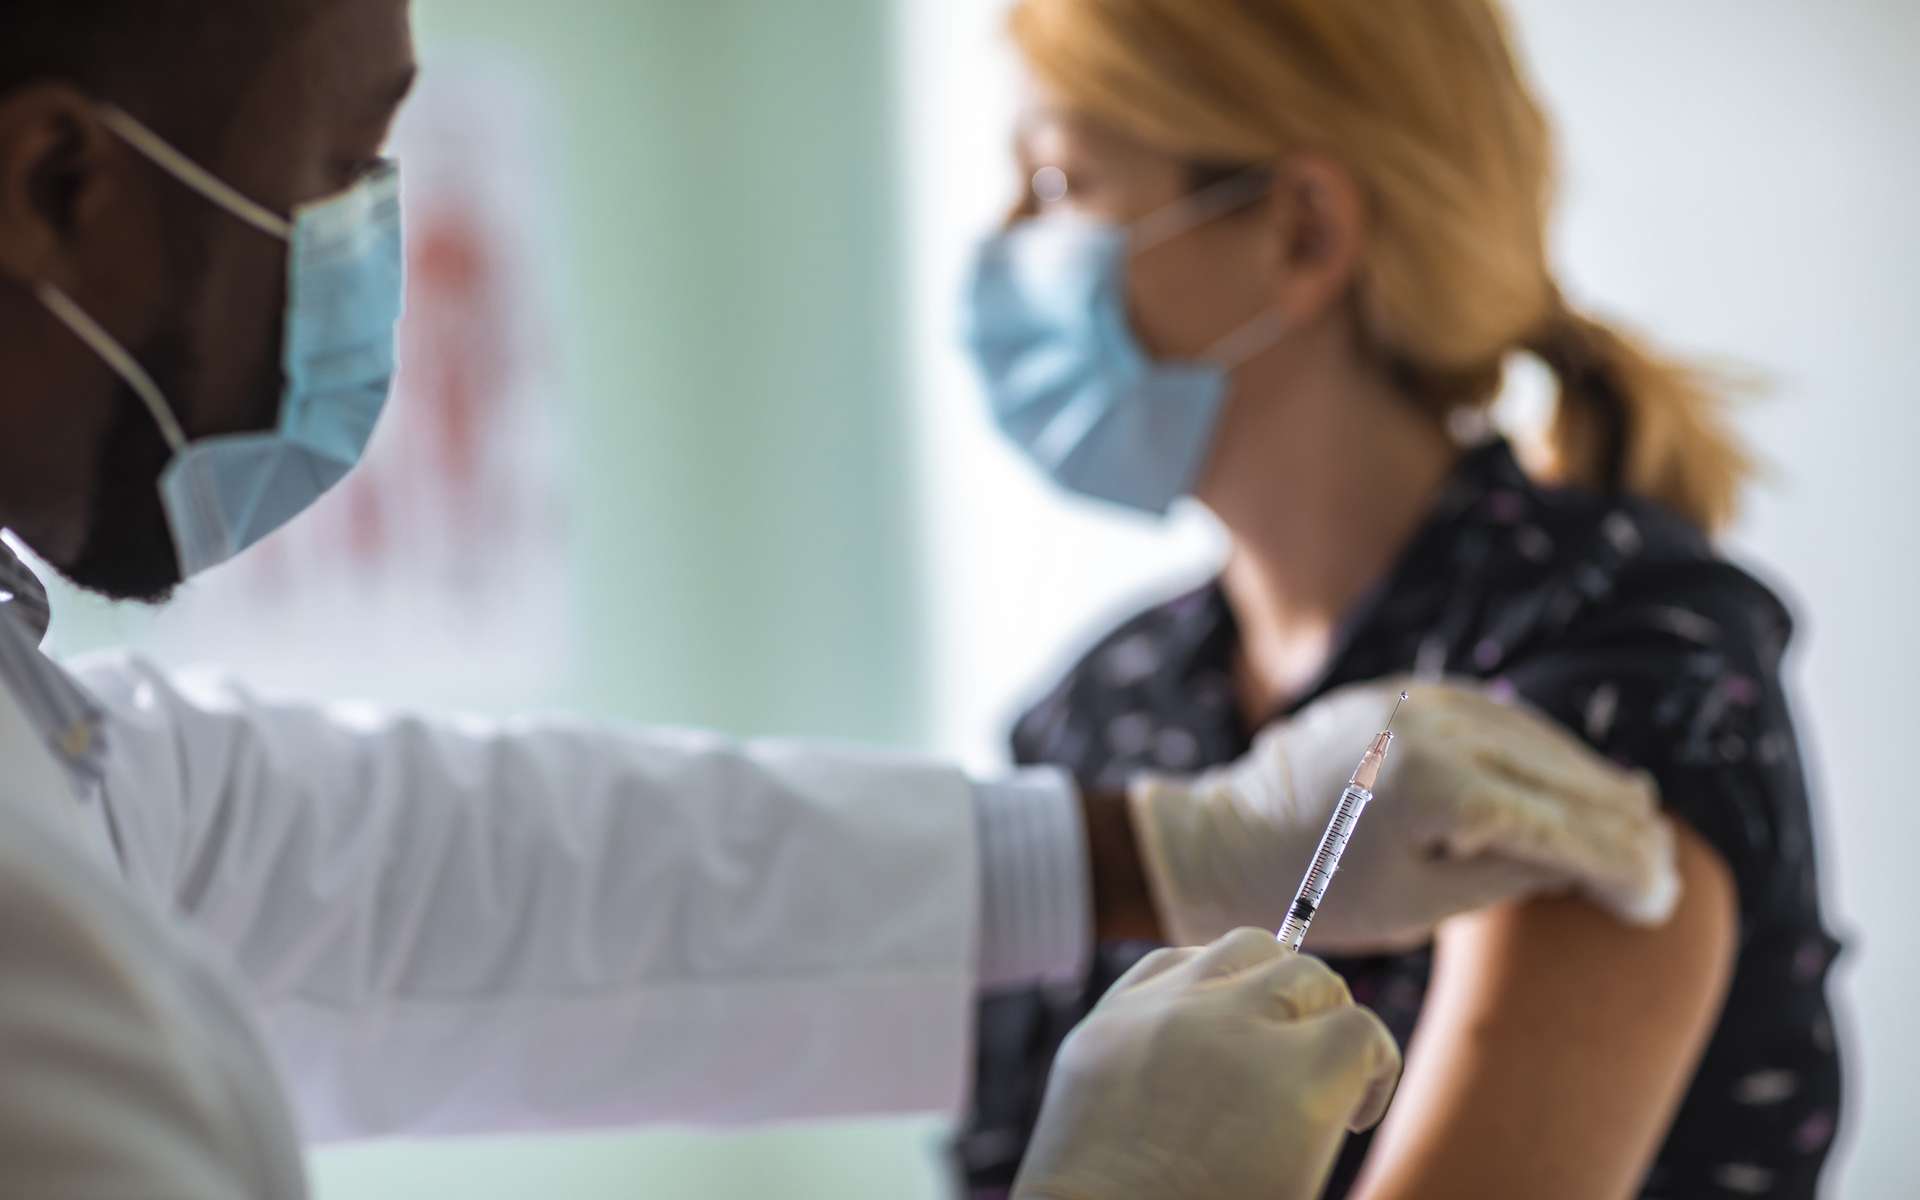 La vaccination anti-Covid-19 a permis d'éviter 20 millions de morts dans le monde. © Geber86, Getty Images